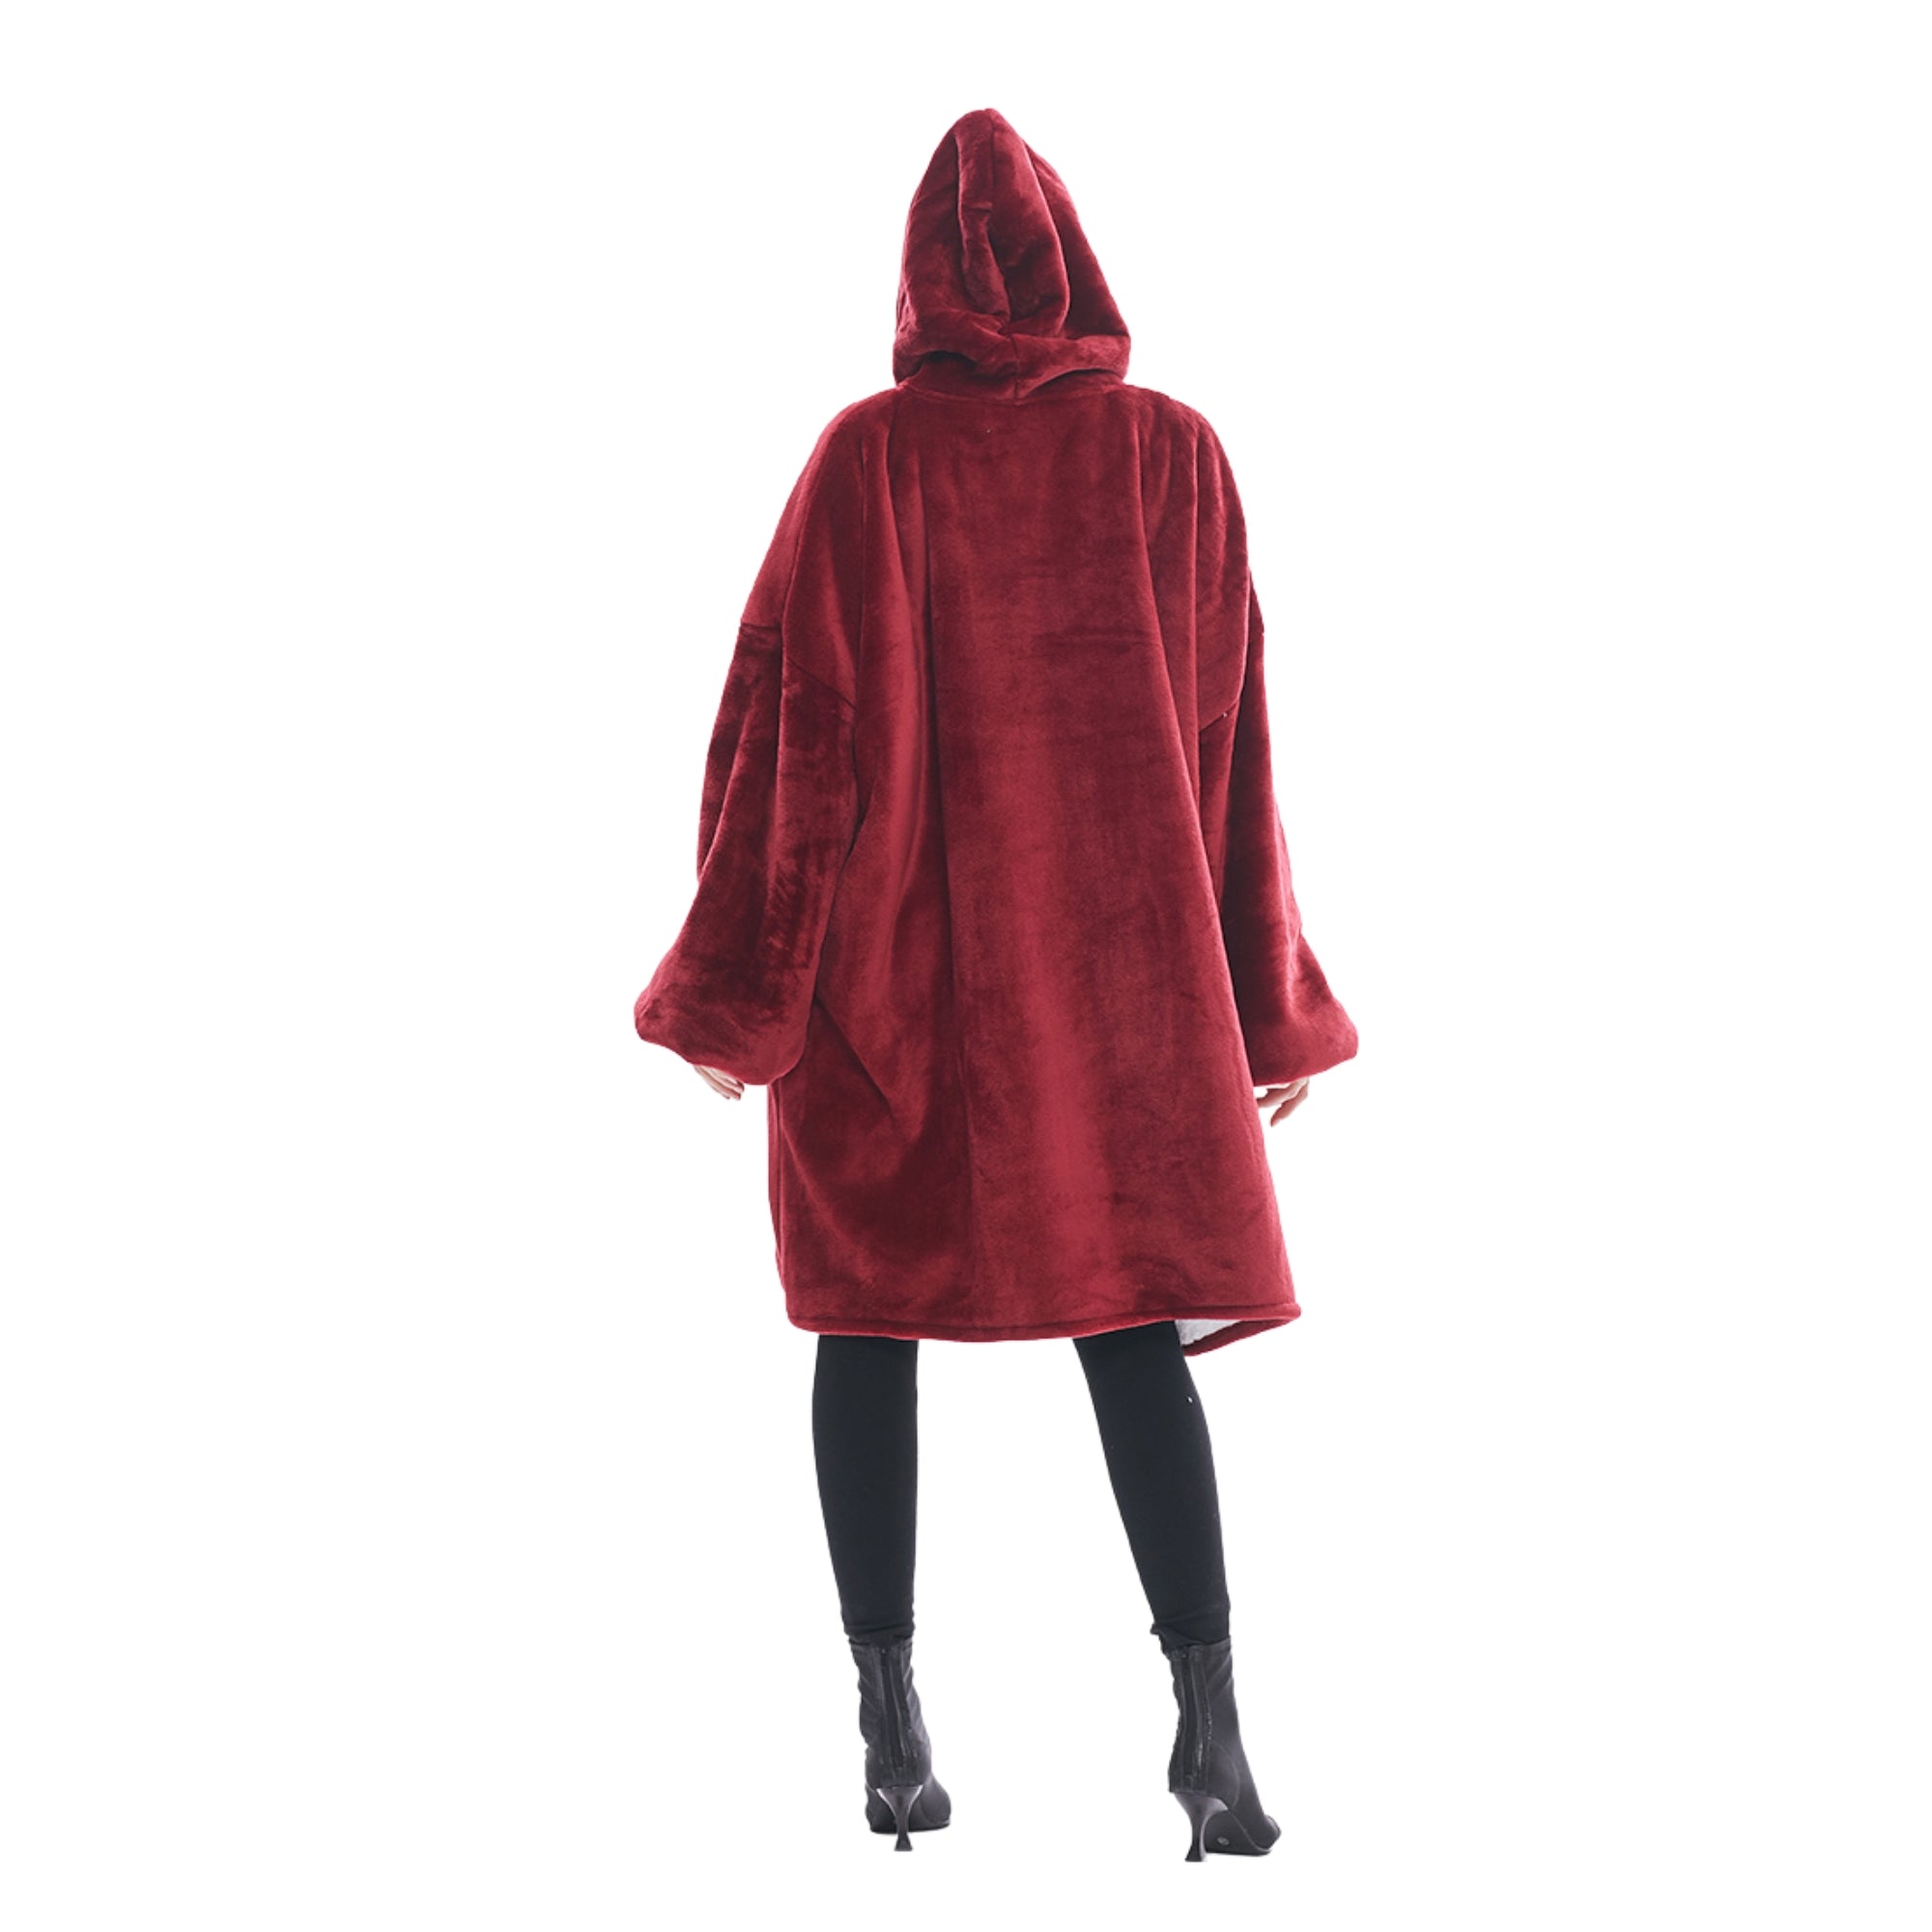 Pull Plaid Femme Sweat Polaire Géant Oversized Hoodie® doublure polaire bordeau rouge